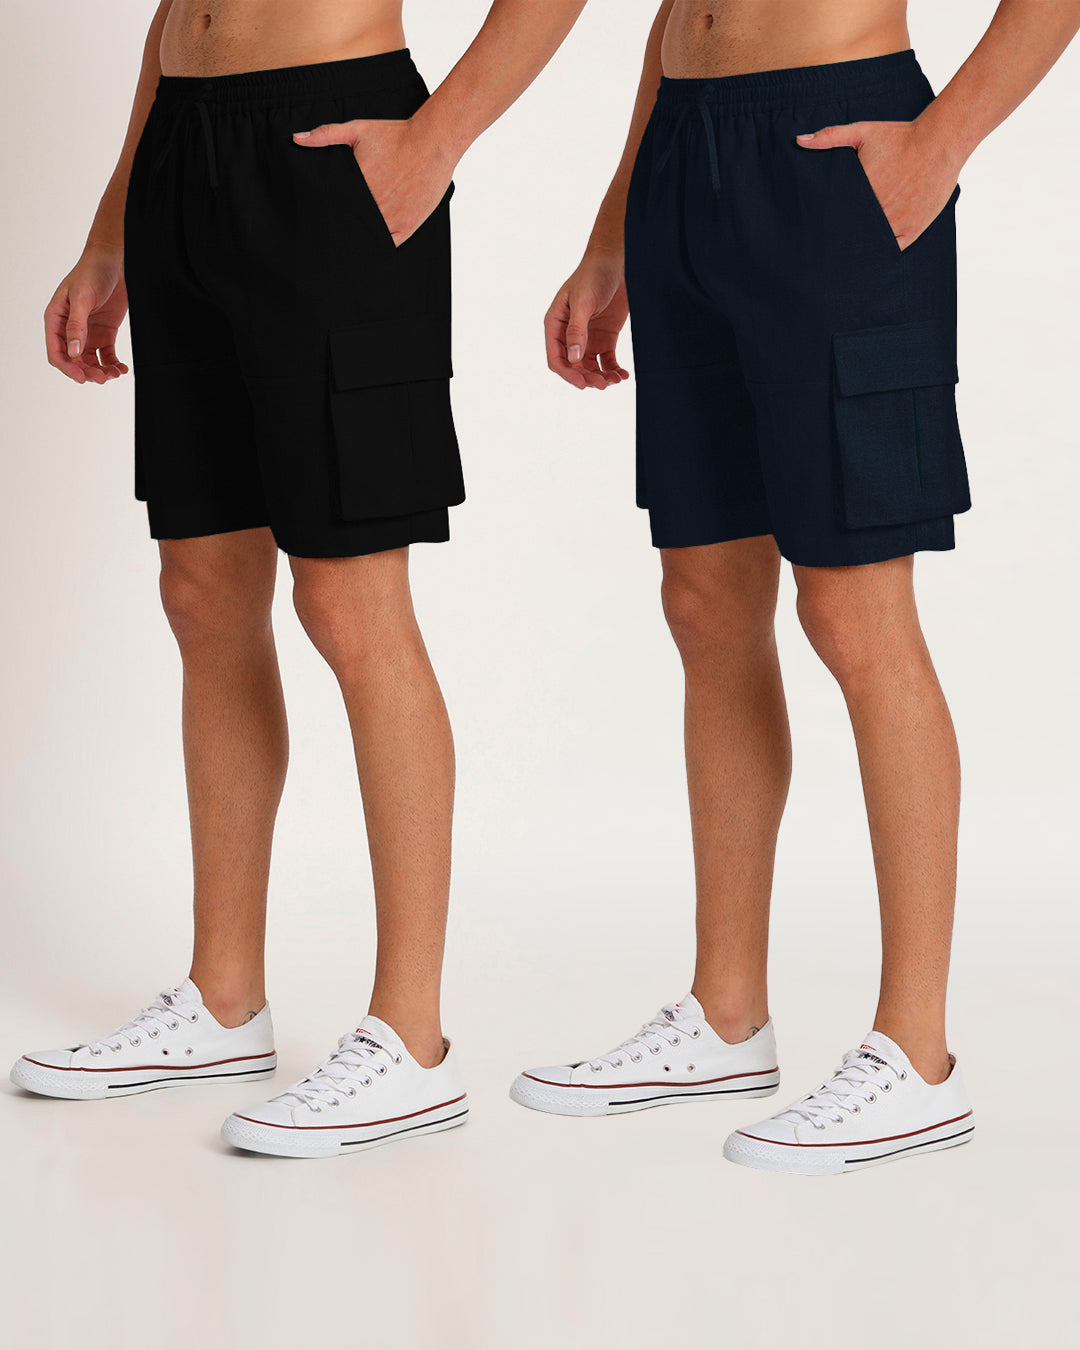 Combo : Slub Comfort Cargo Shorts Black & Midnight Blue Men's Shorts